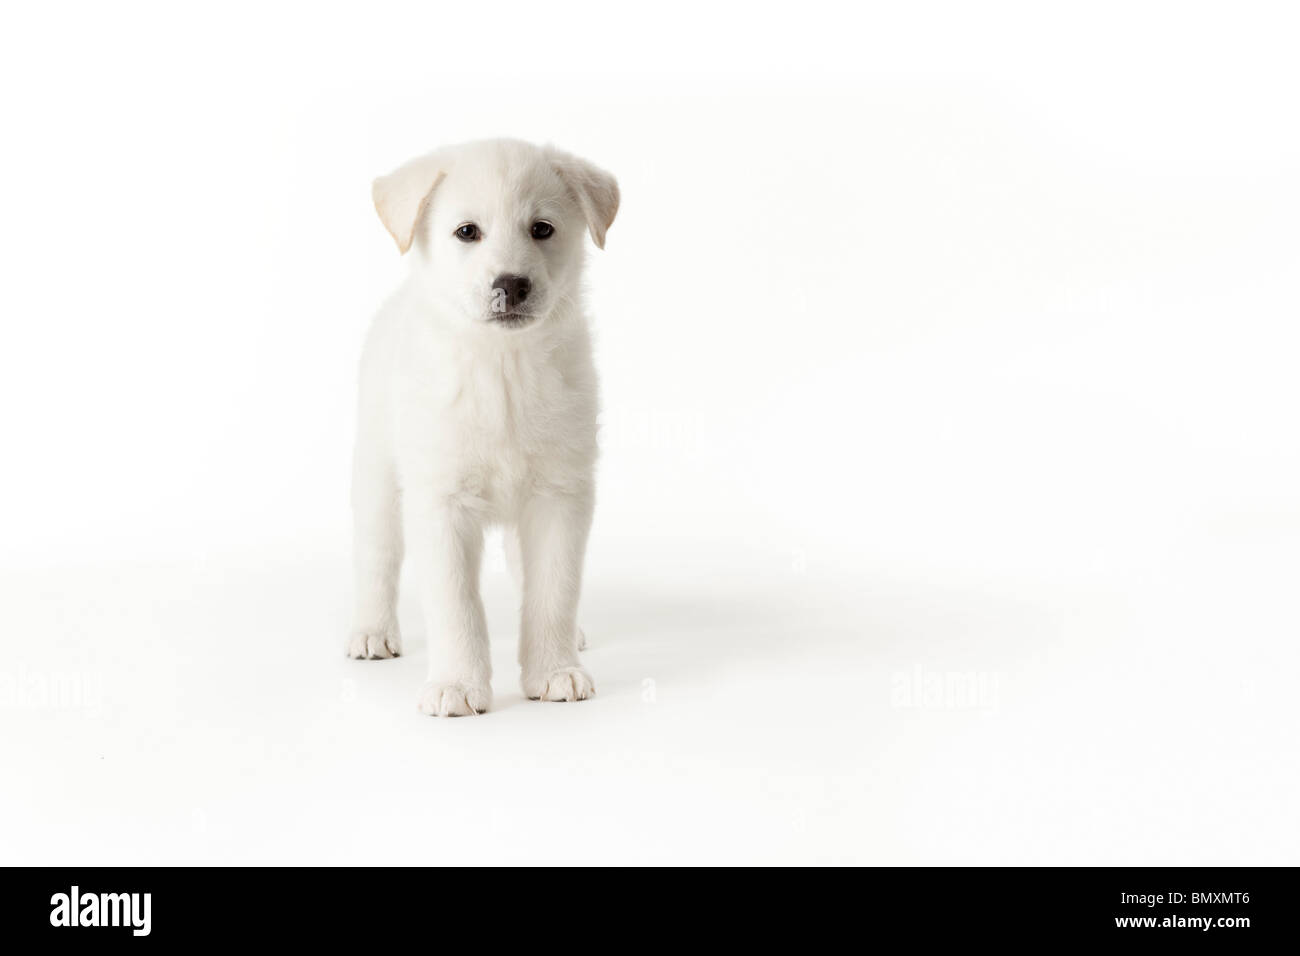 Grazioso cucciolo bianco in piedi su sfondo bianco Foto Stock